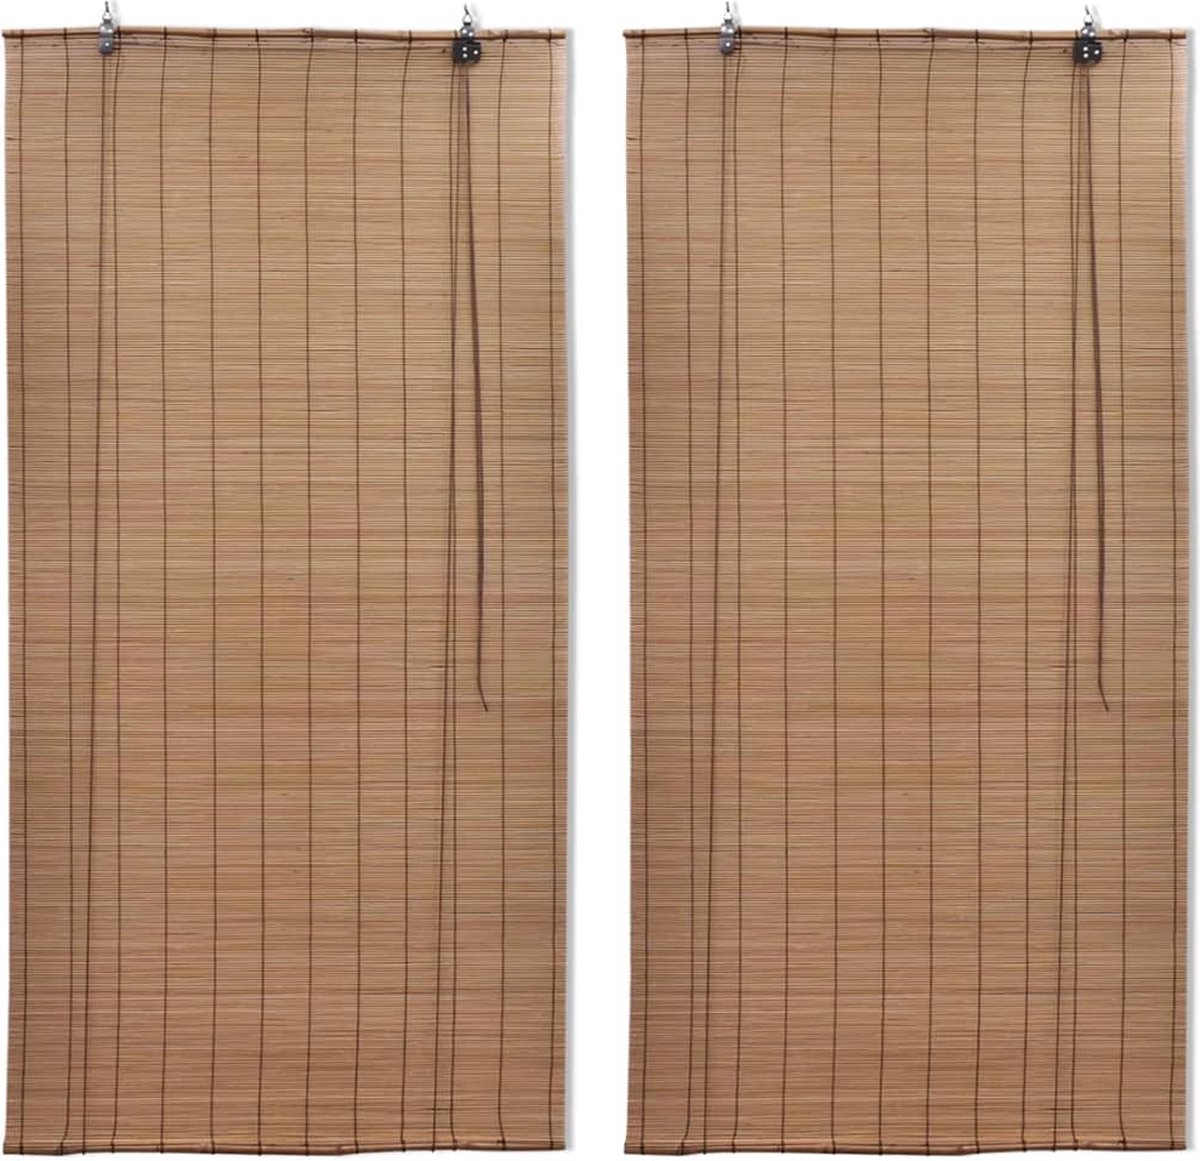 VidaLife Rolgordijnen 2 st 120x220 cm bamboe bruin